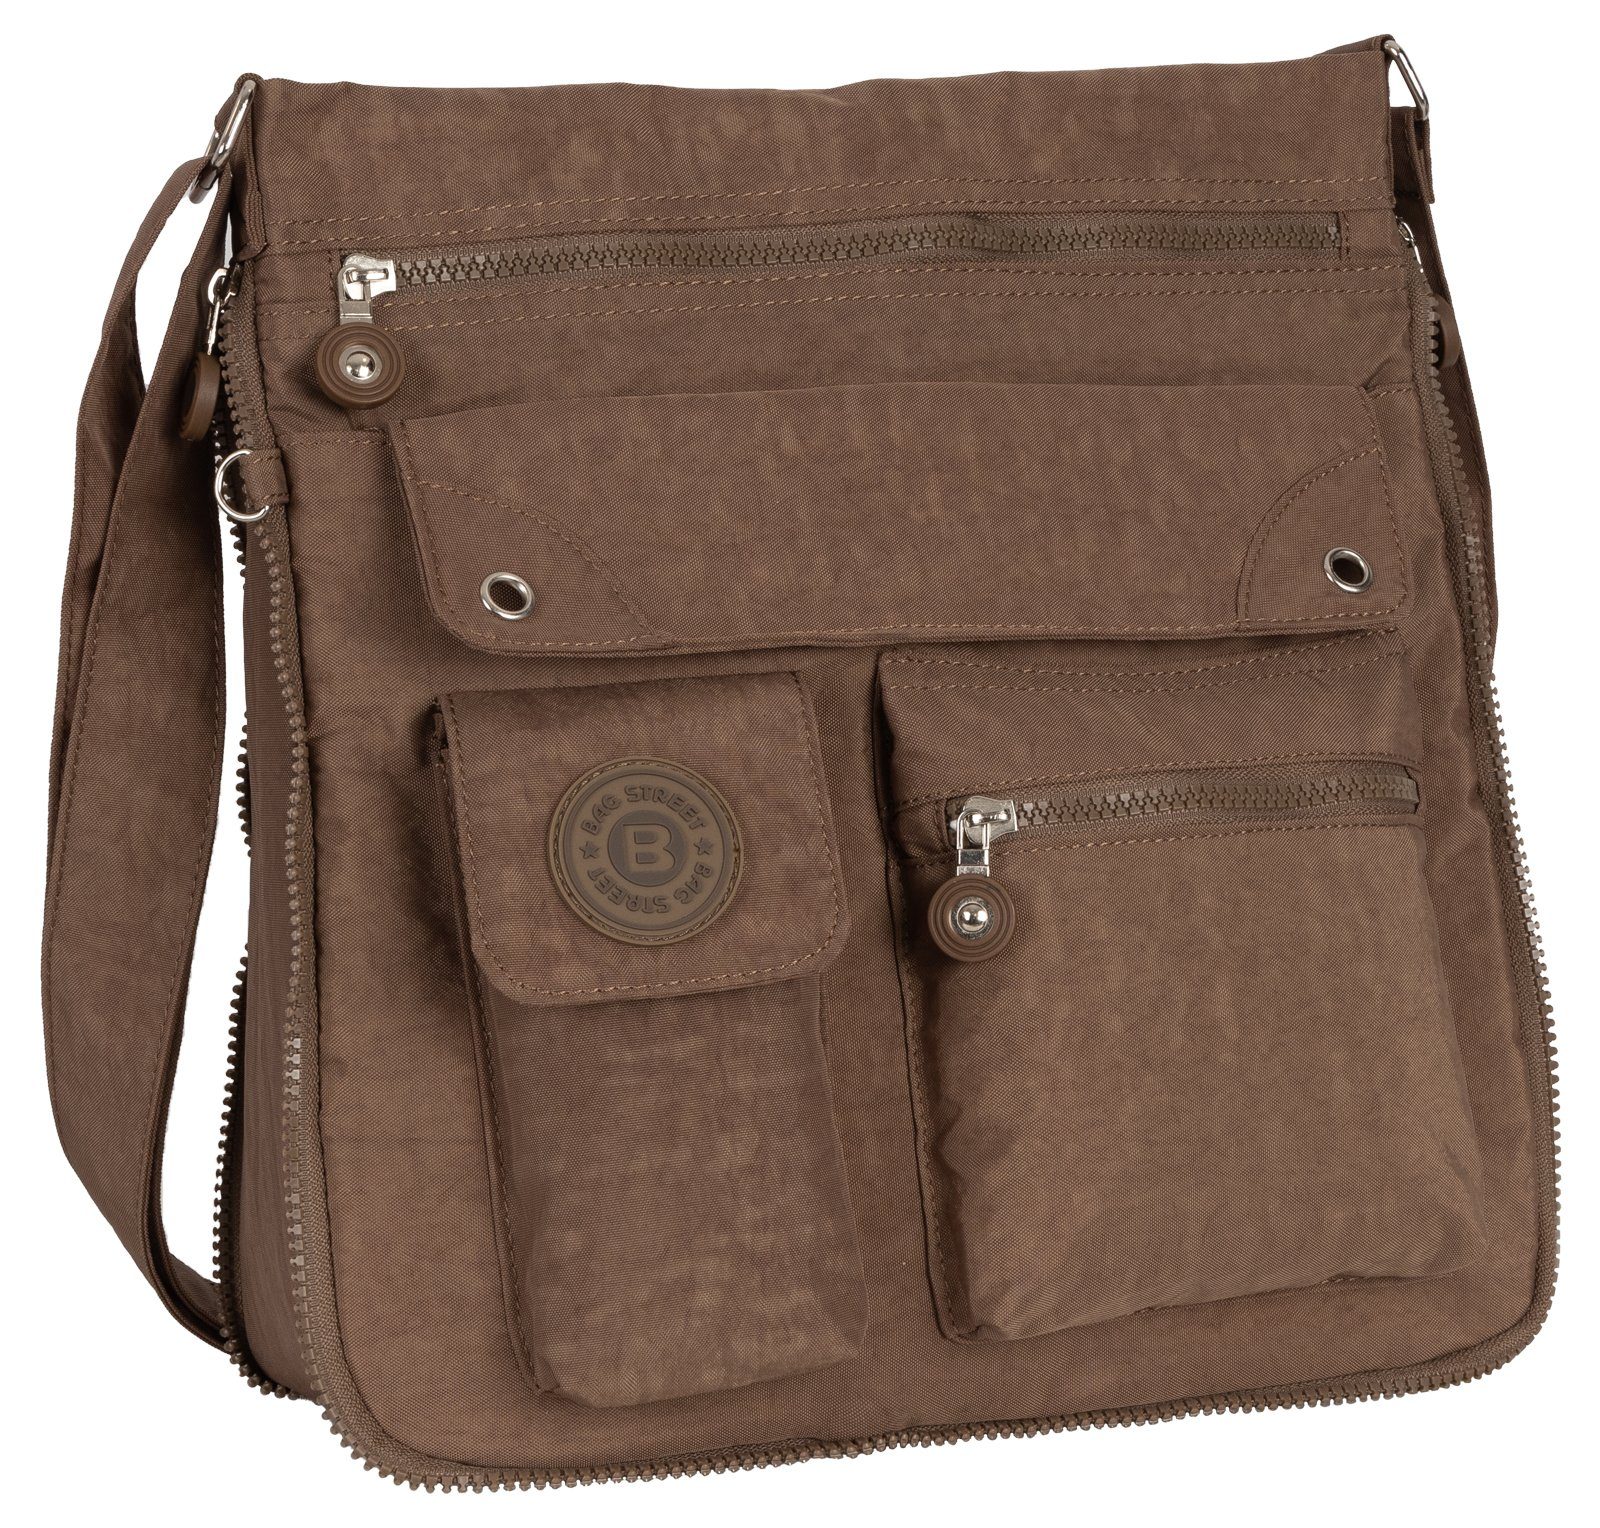 BAG STREET Schlüsseltasche Damentasche Umhängetasche Handtasche Schultertasche Schwarz, als Schultertasche, Umhängetasche tragbar Braun | Schlüsseltaschen